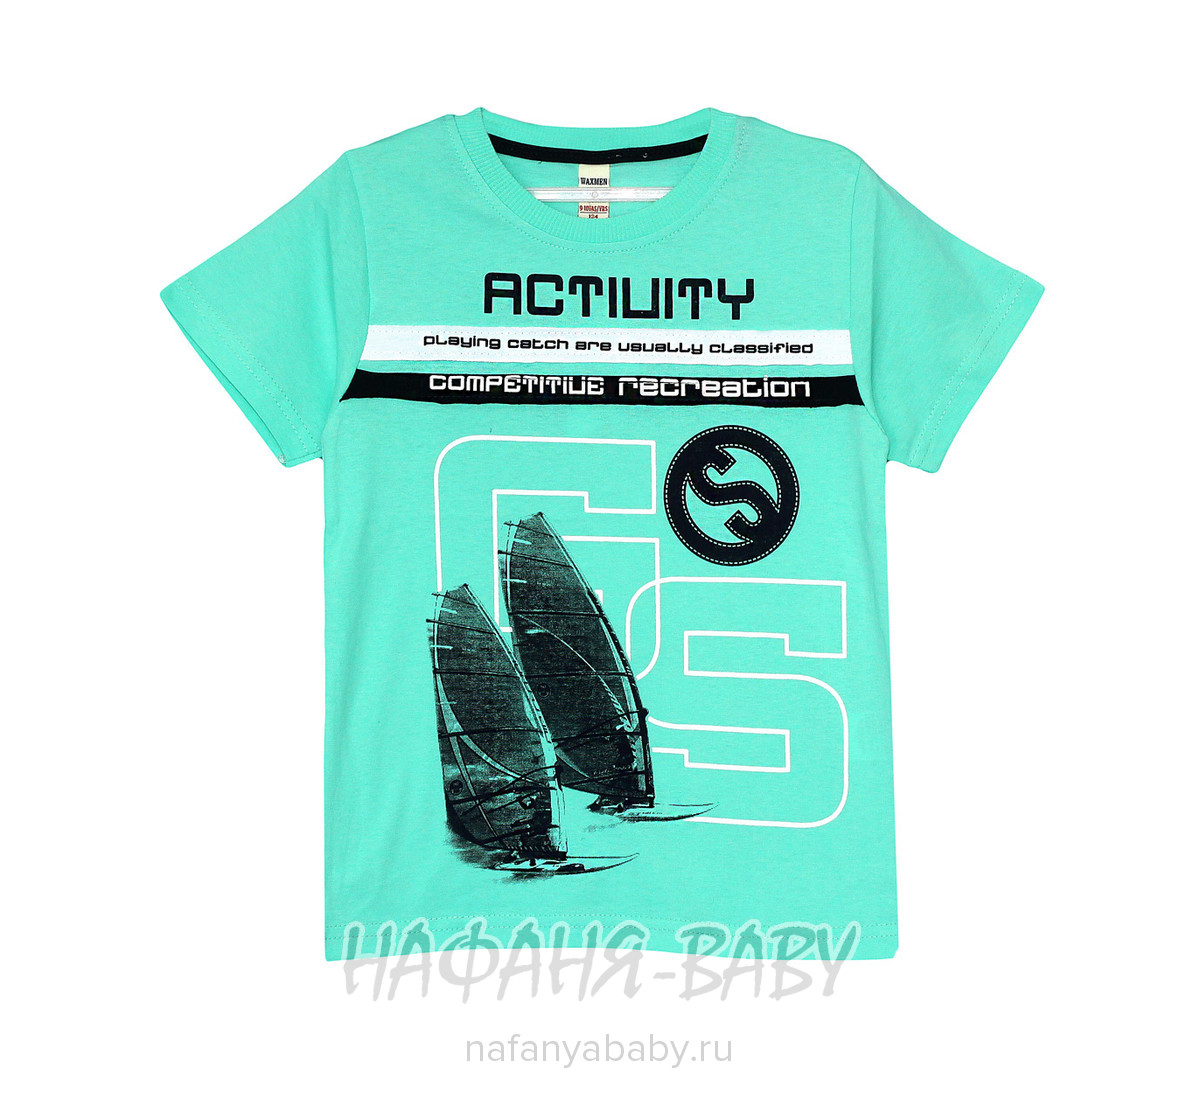 Подростковая футболка WAXMEN, купить в интернет магазине Нафаня. арт: 4915.